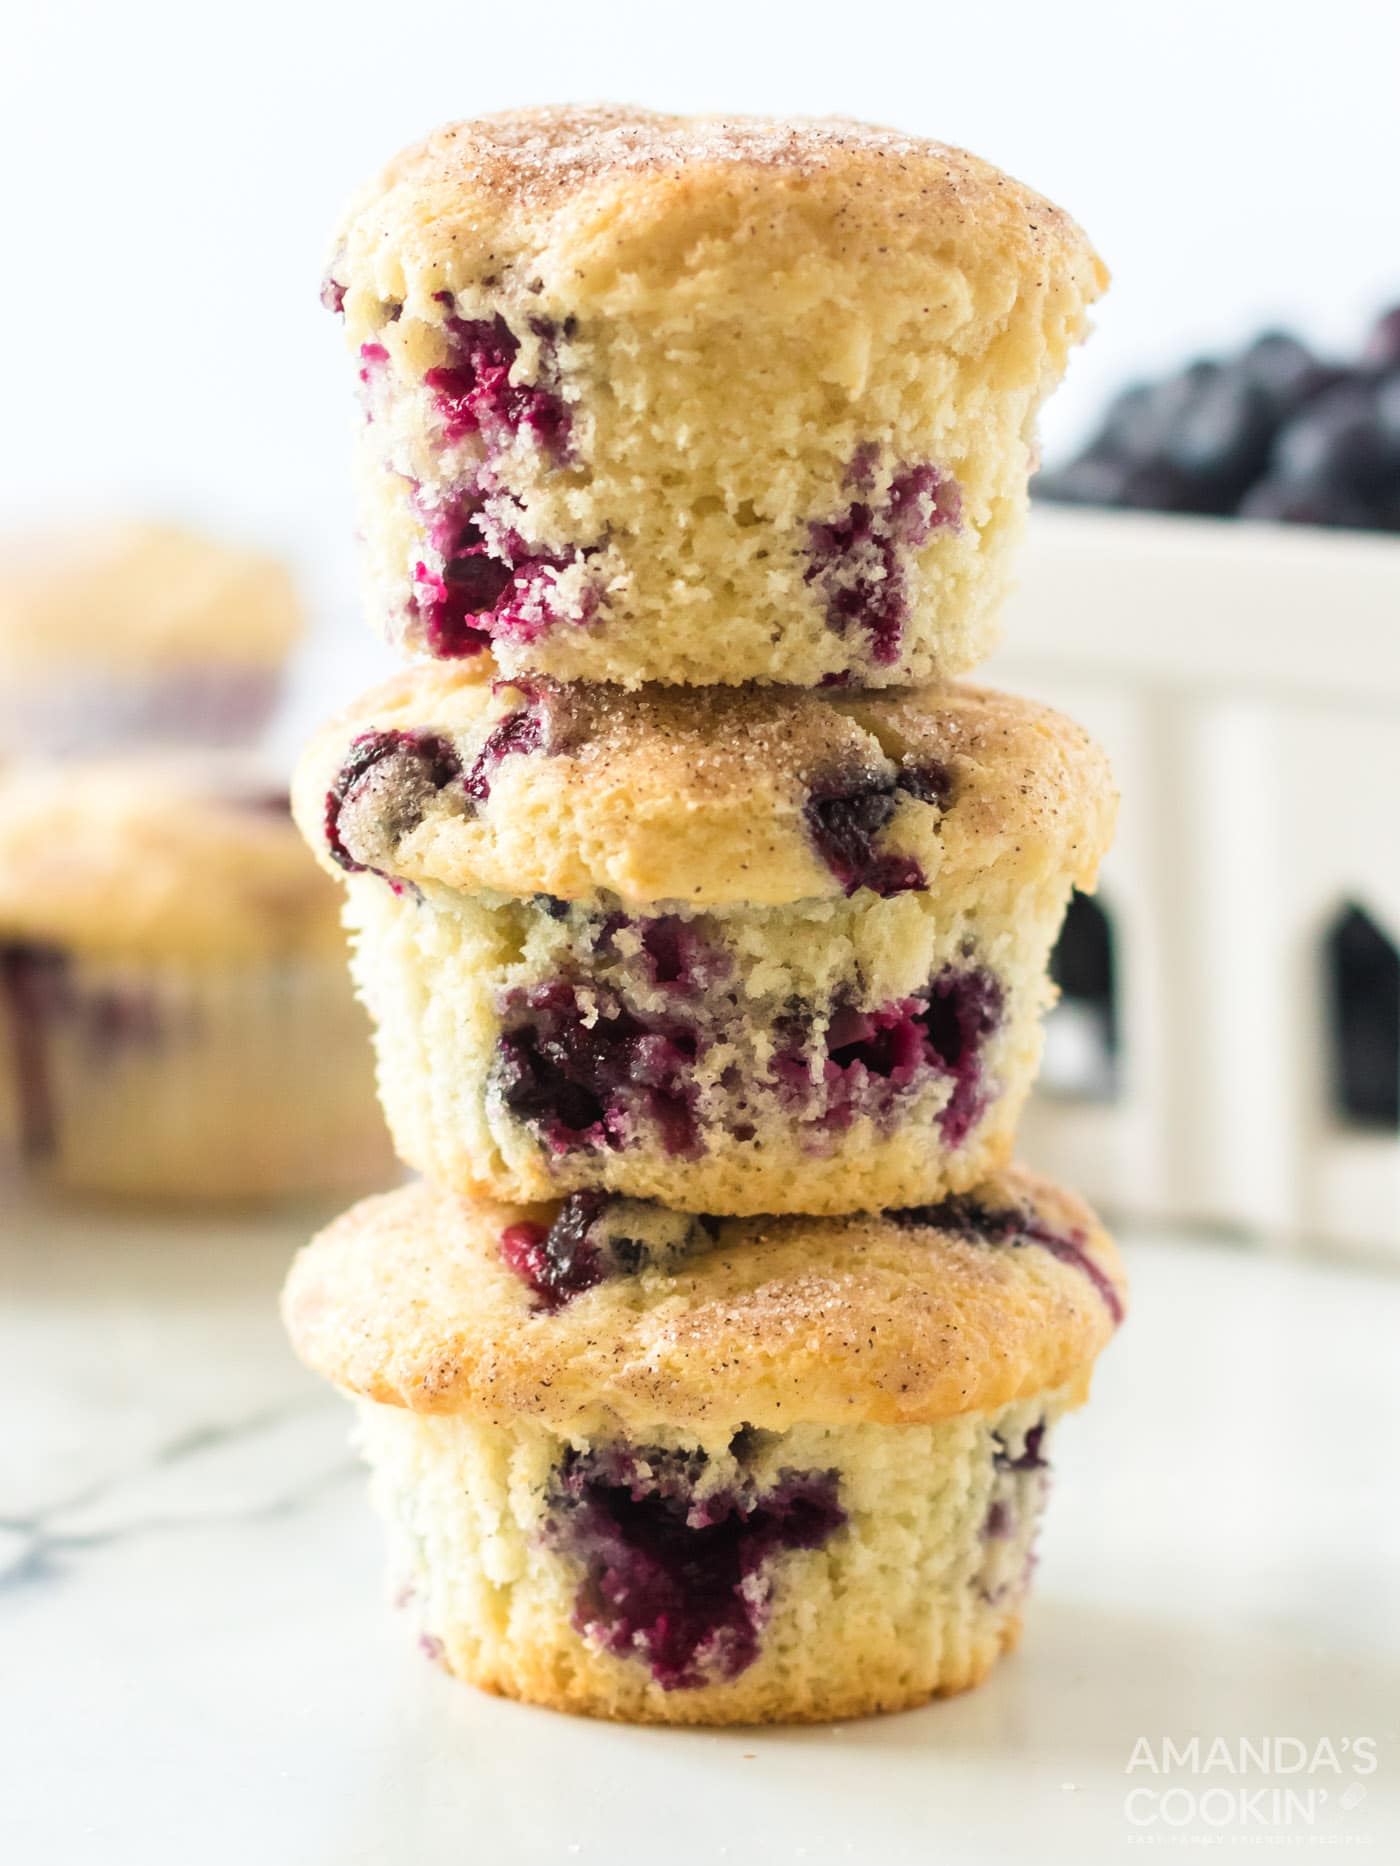 Blueberry Muffin Recipe - Amanda's Cookin'